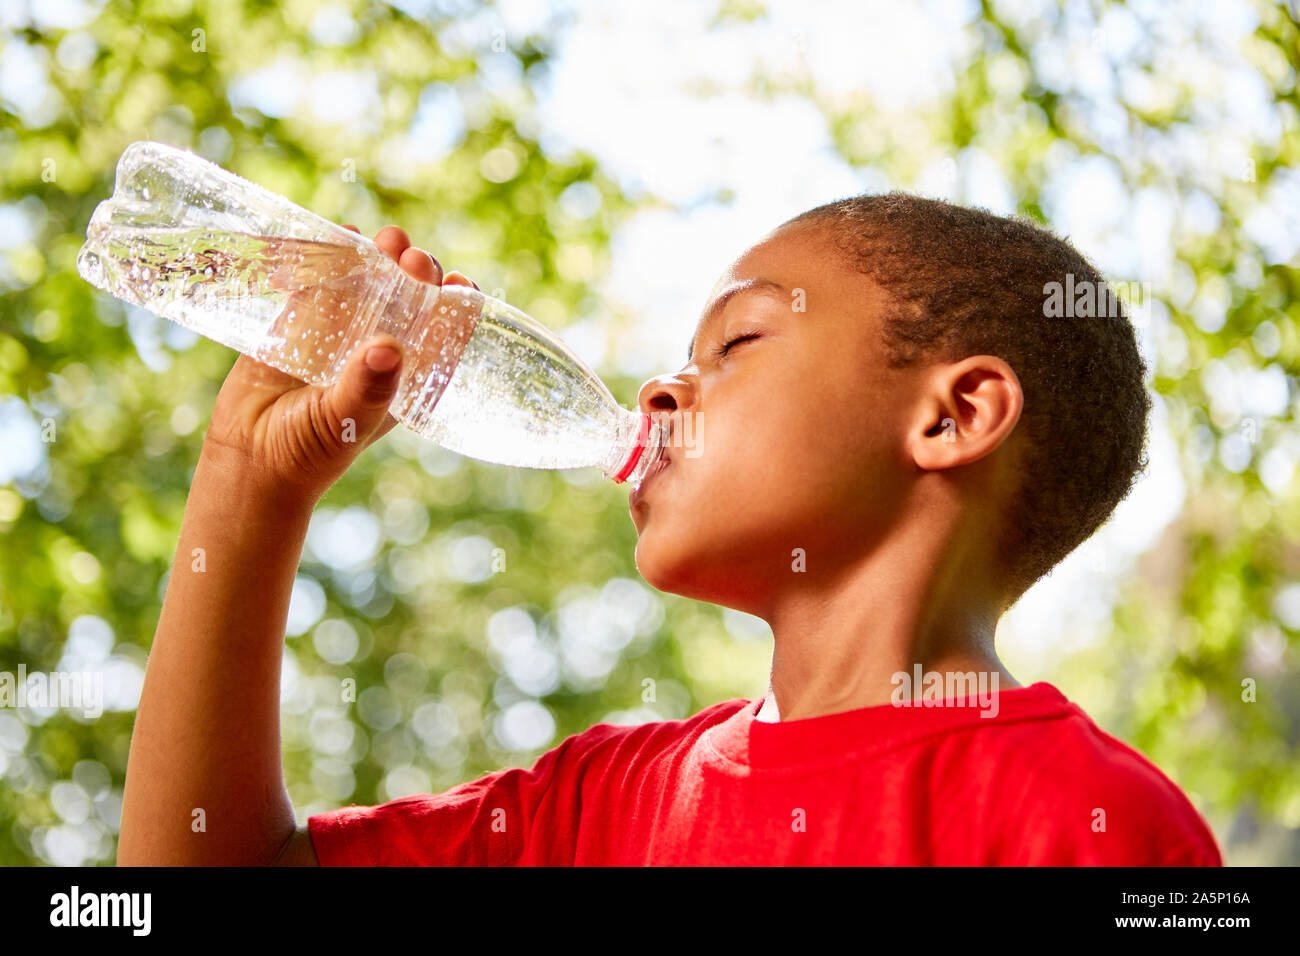 African boy est assoiffé nous réjouissons de boire une bouteille d'eau Banque D'Images